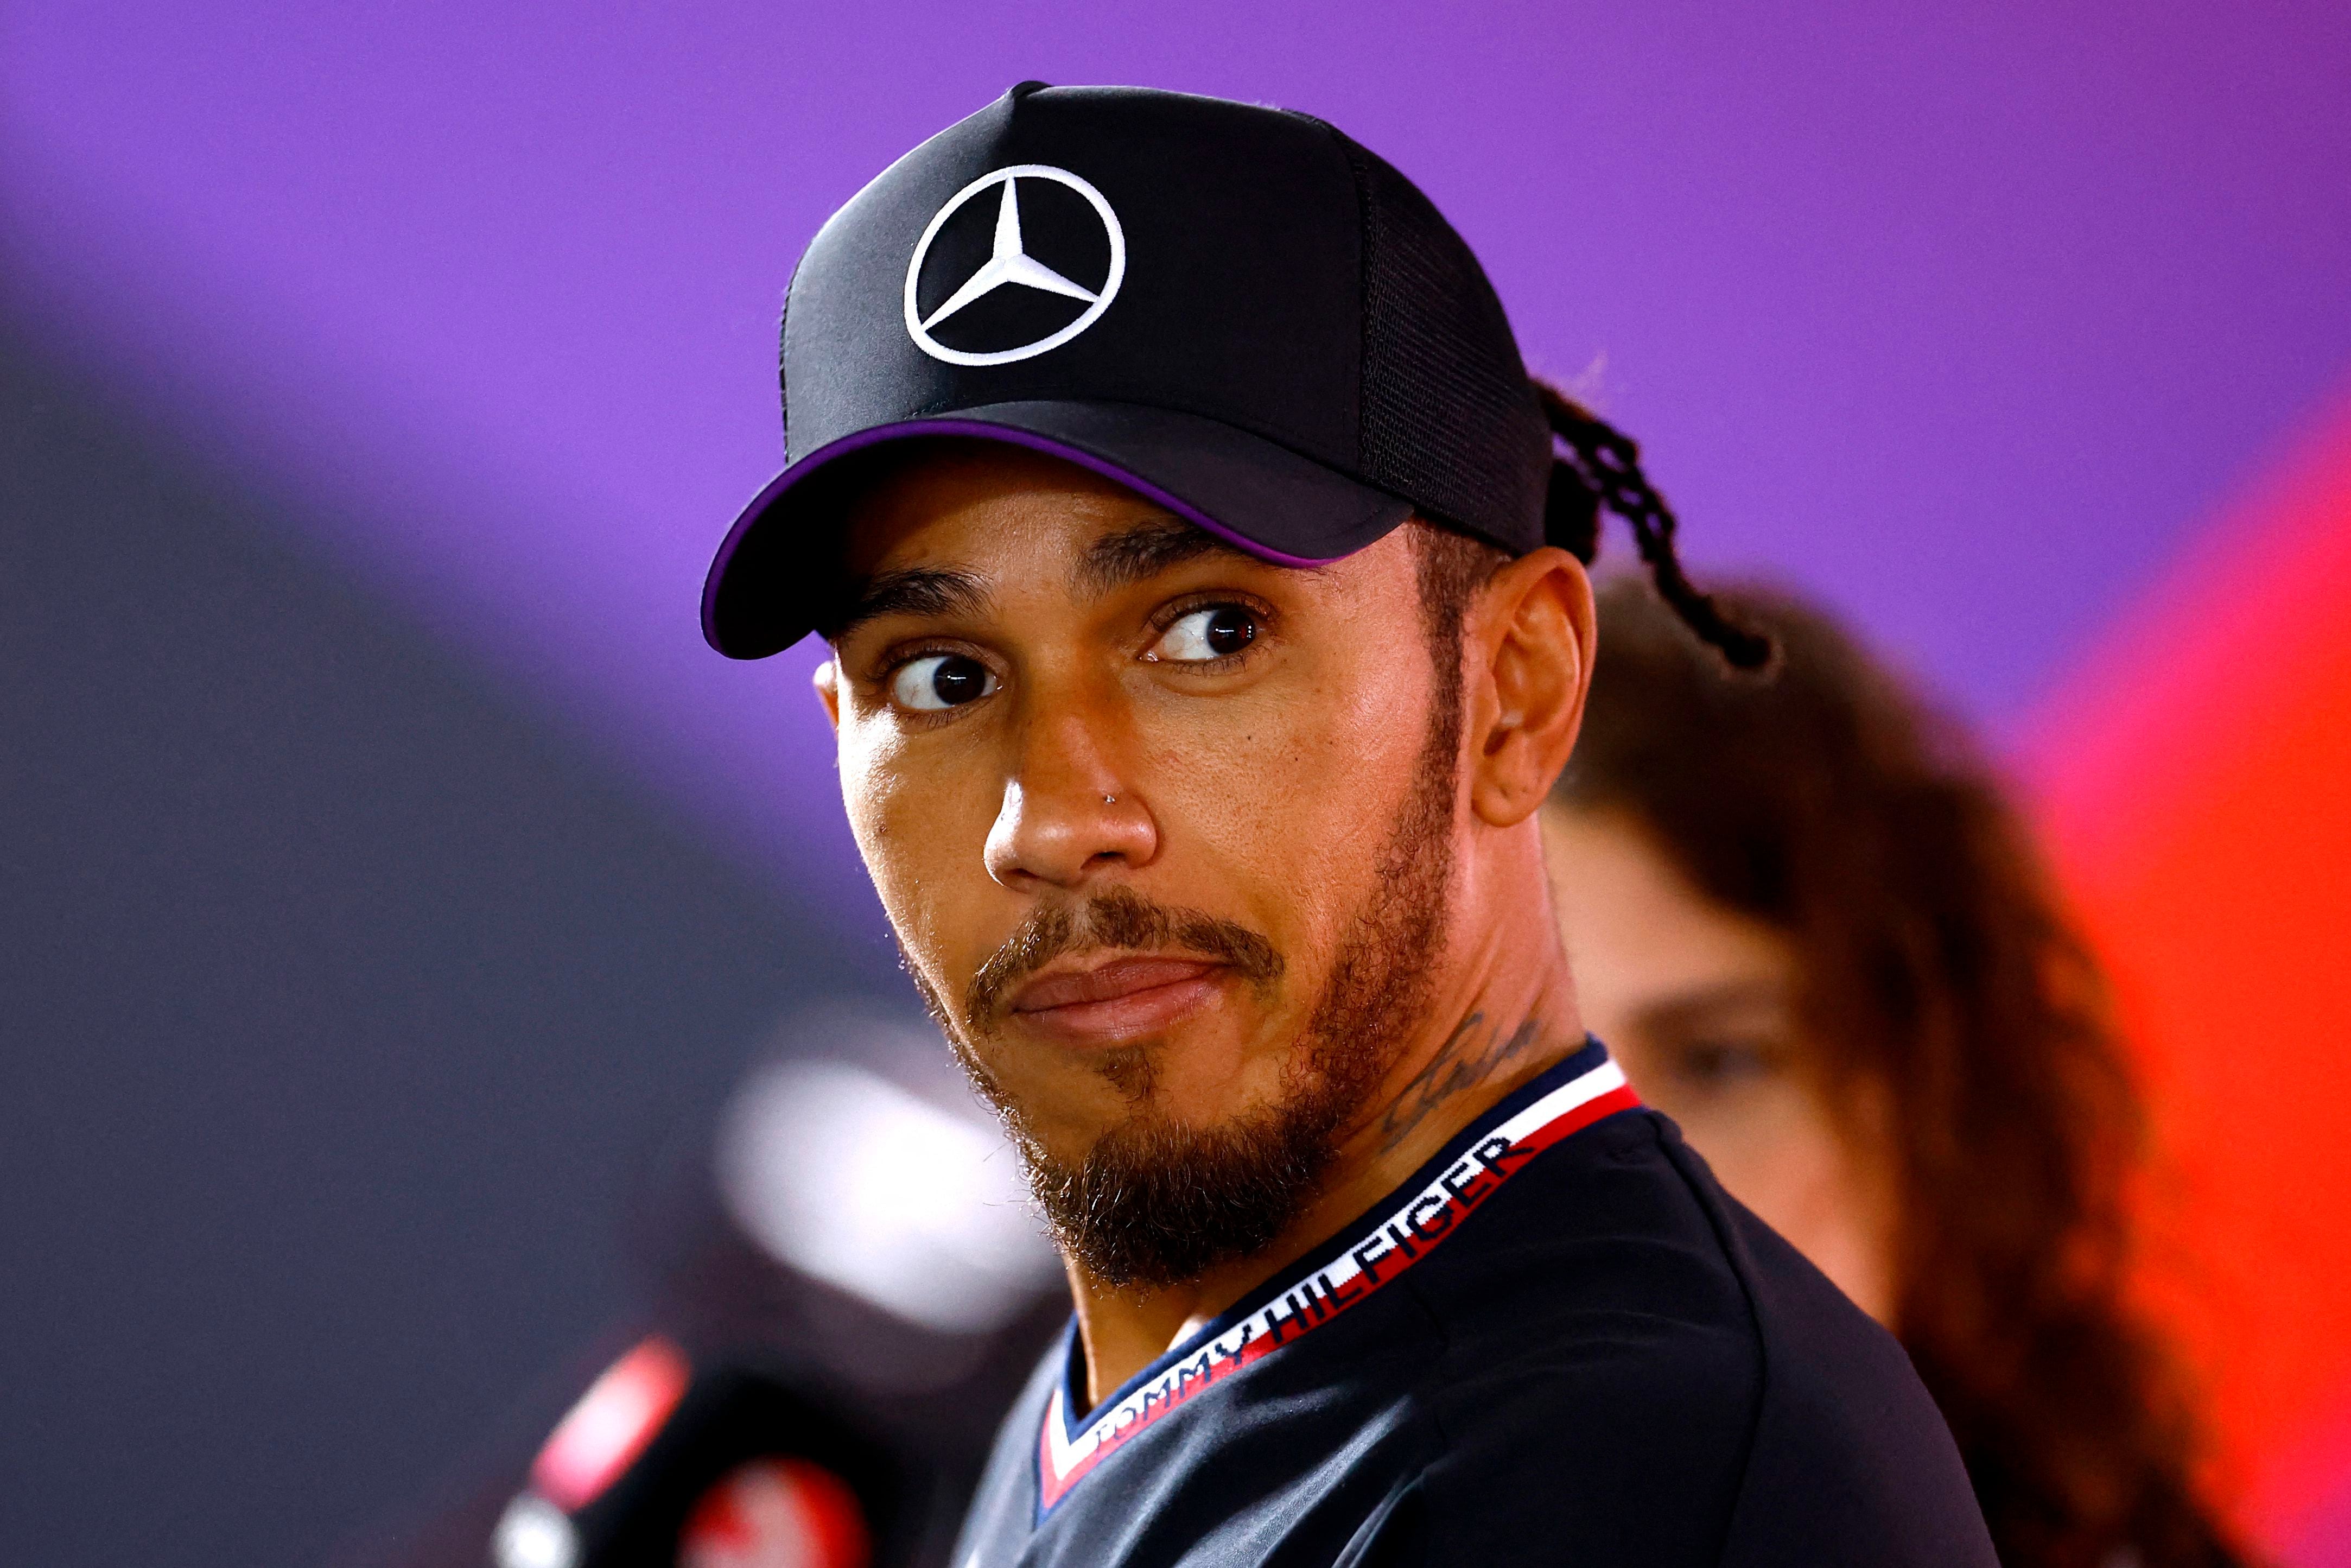 Lewis Hamilton ya piensa en su retiro (Reuters)